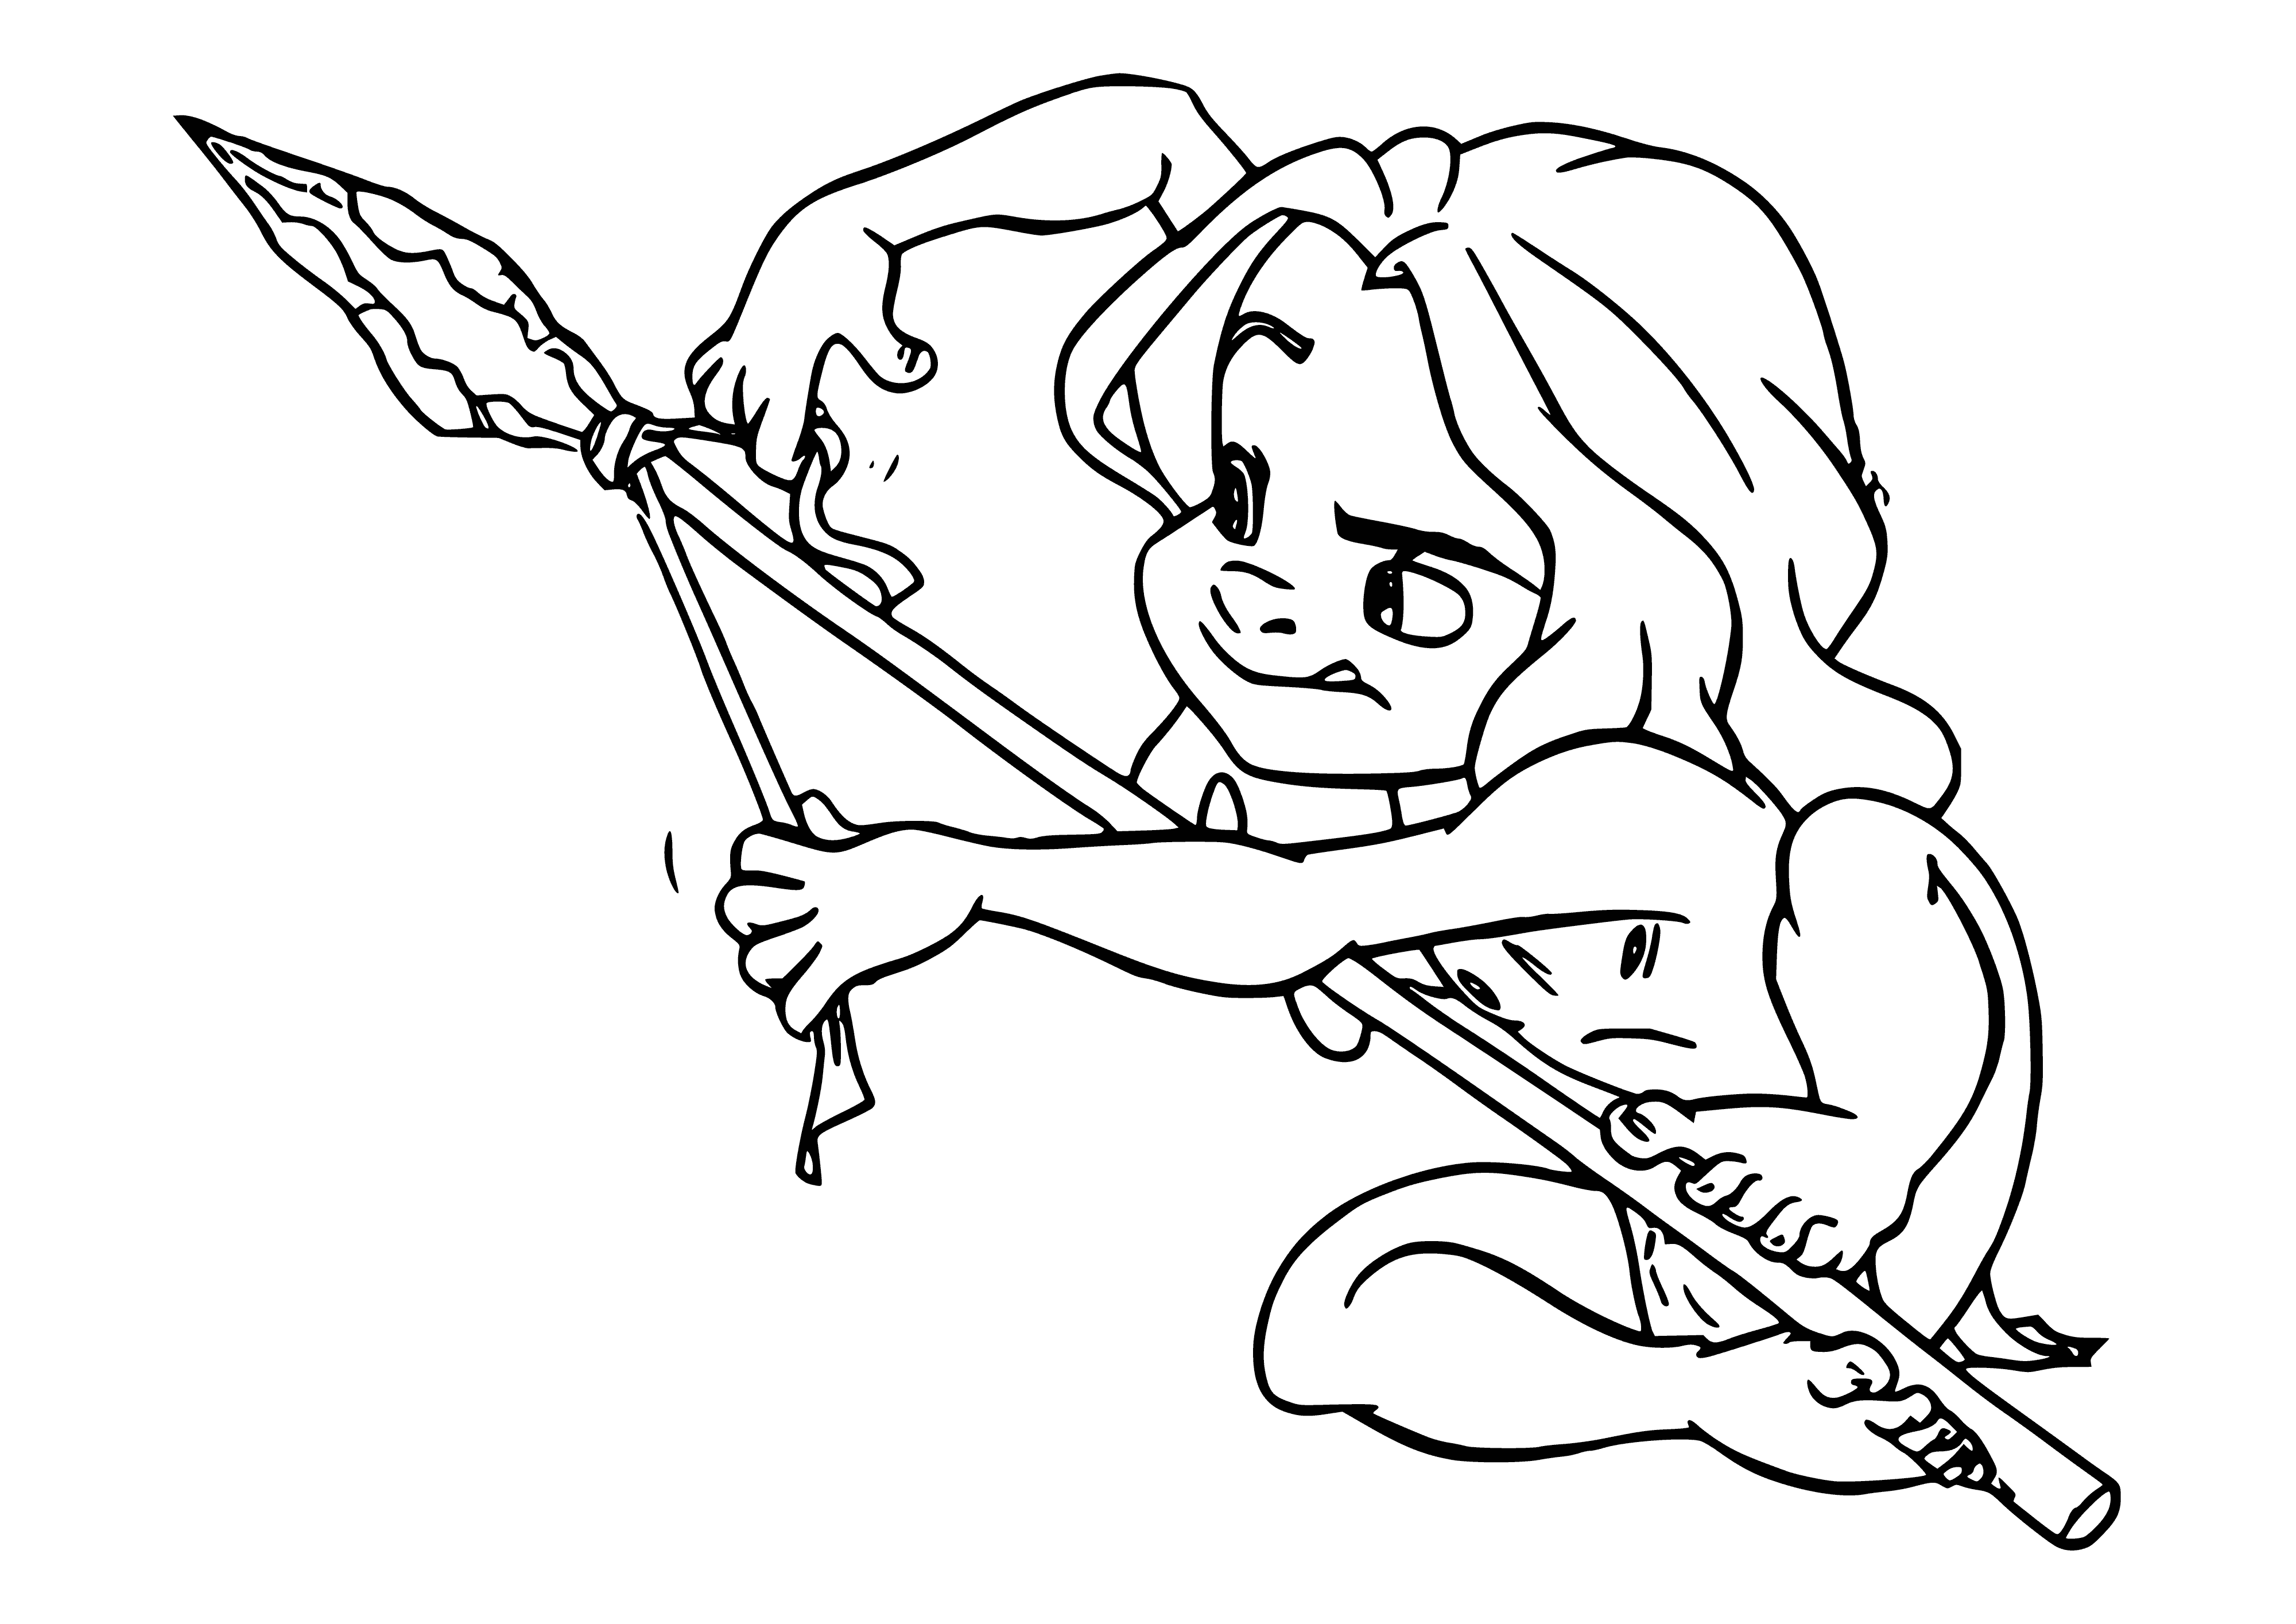 Baby Tarzan coloring page